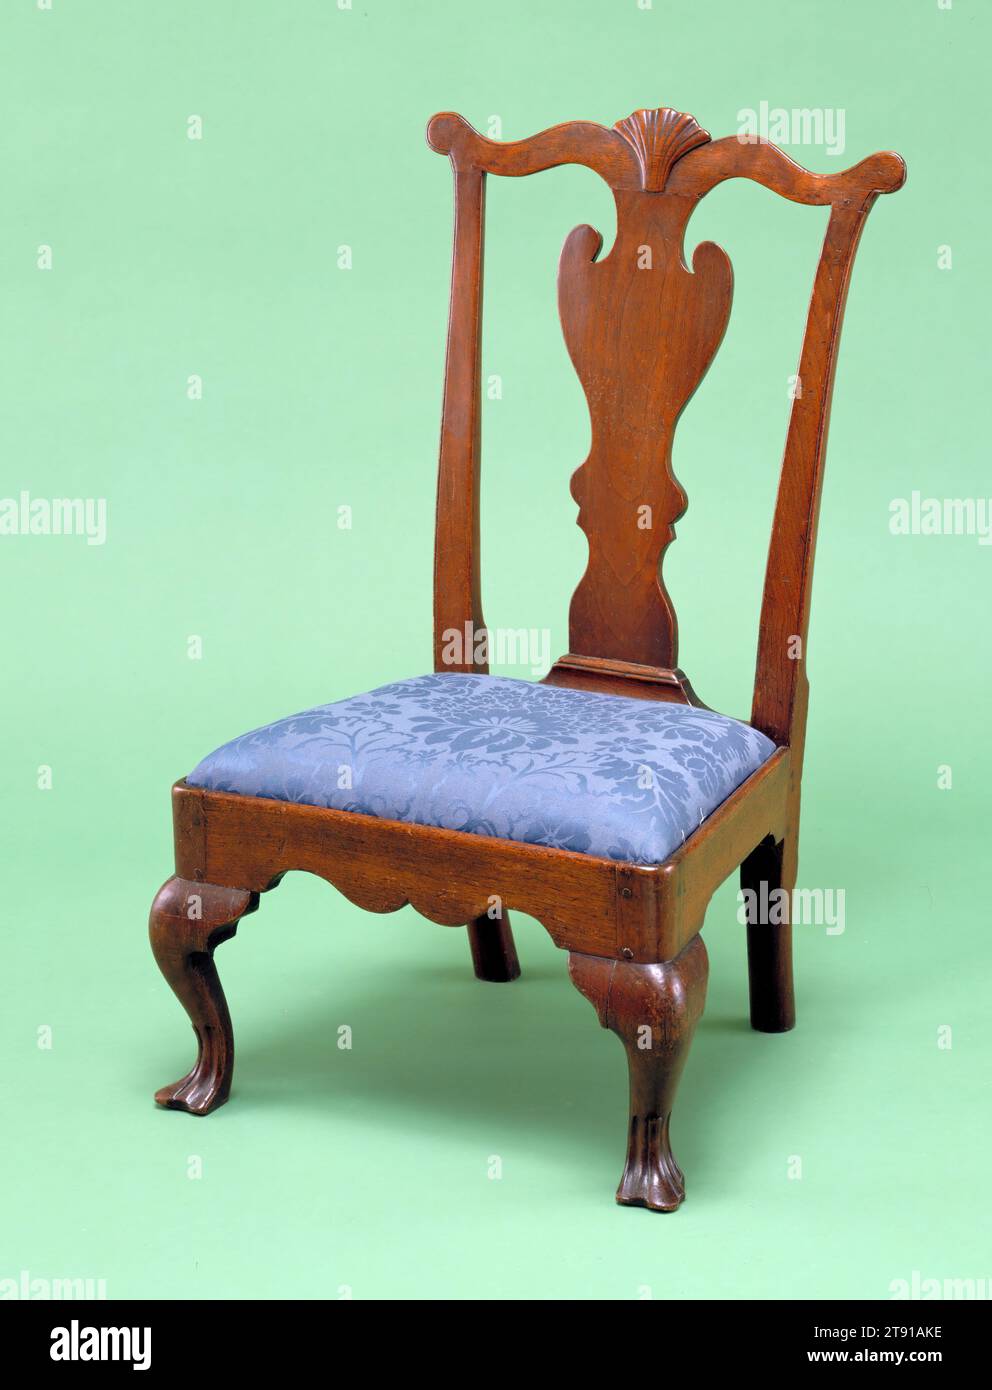 Silla zapatilla, c. 1760-1790, 35 x 20 1/2 x 17 in. (88,9 x 52,07 x 43,18 cm), nogal, tela, Estados Unidos, siglo XVIII, esta silla de asiento bajo es un ejemplo raro de esta forma, puede haber sido utilizado como silla de un niño Foto de stock